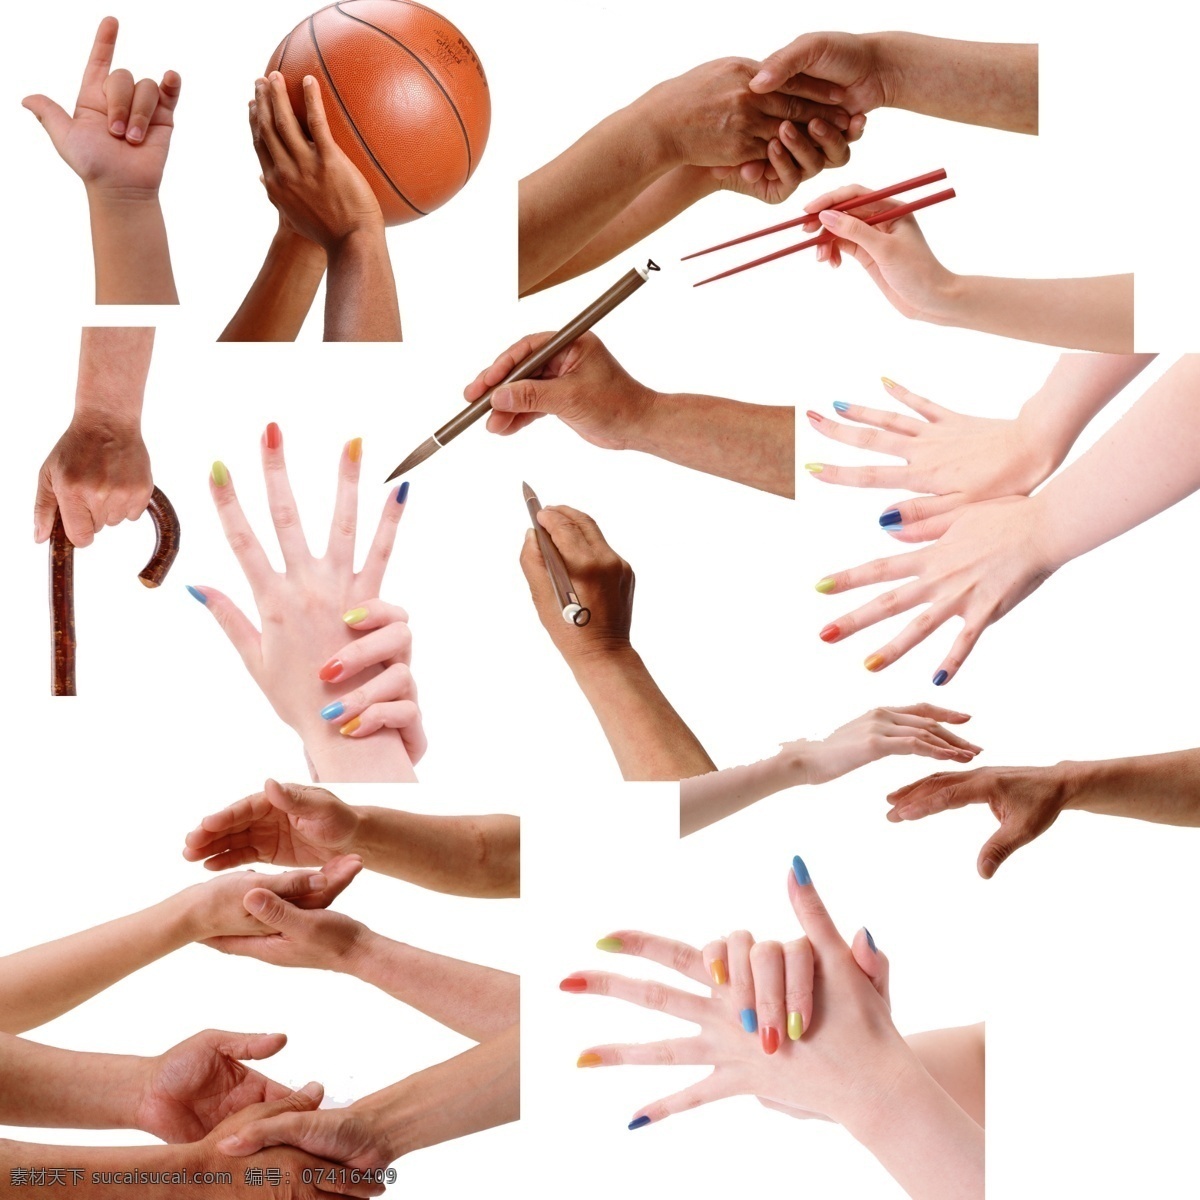 各种 手势 手势图片 手势喻意 握手 握手psd 握手图片 手势图片下载 打篮球手势 拿筷子手势 psd源文件